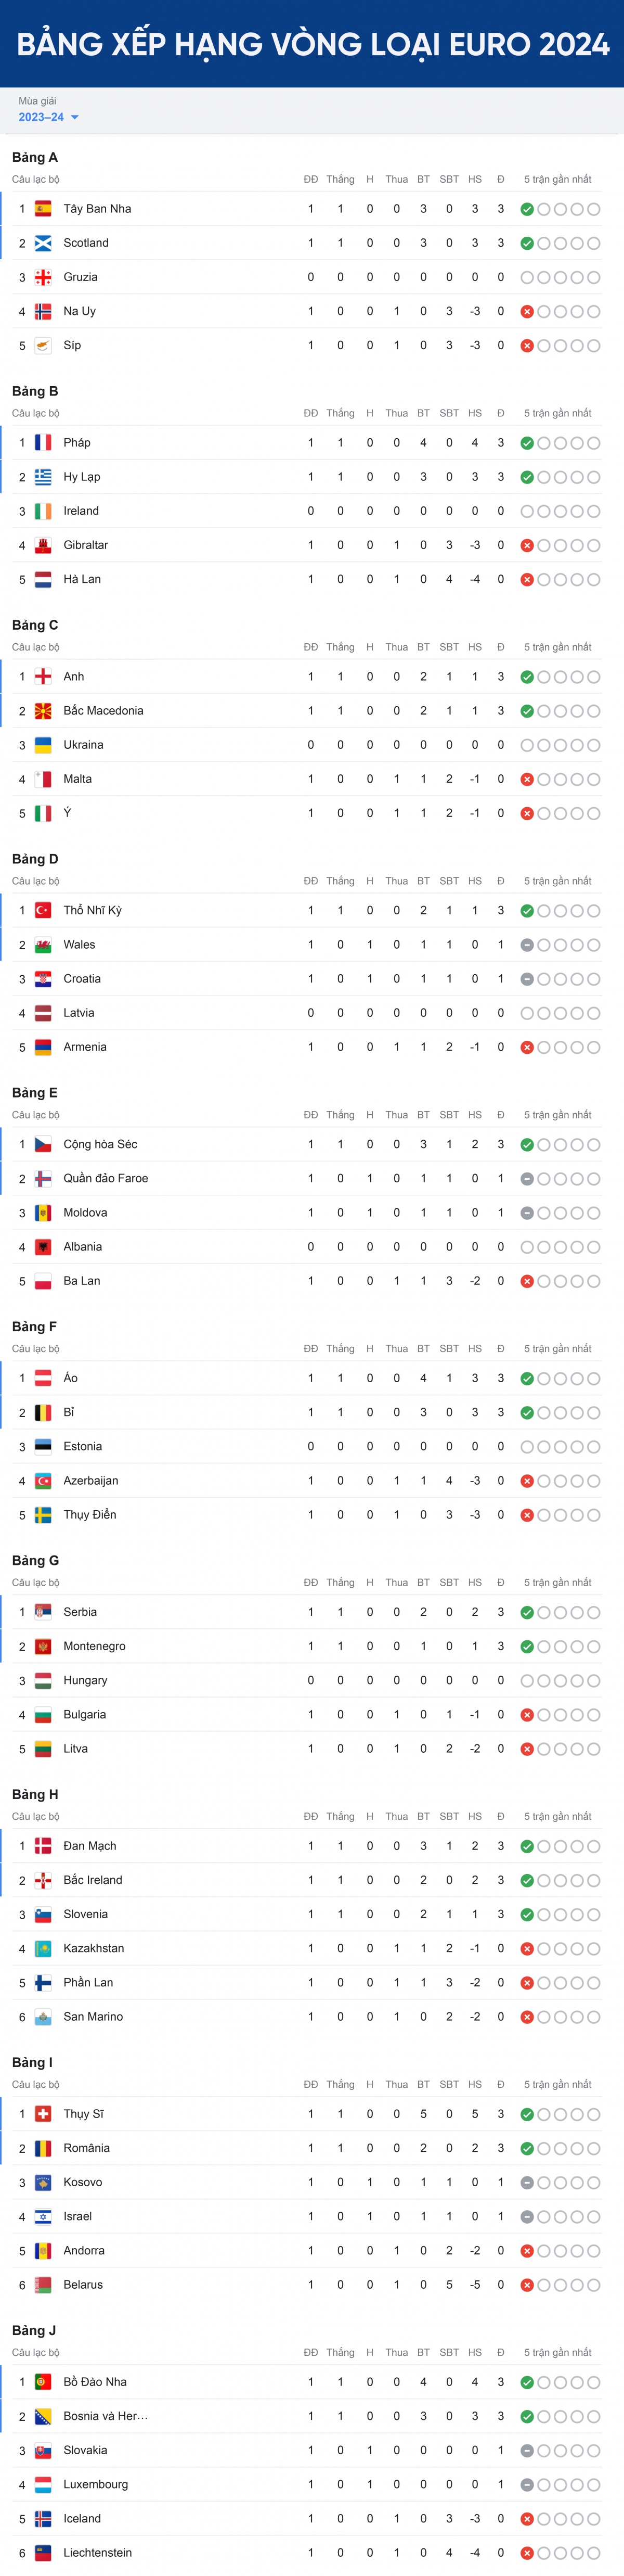 Bảng xếp hạng vòng loại EURO 2024 mới nhất Bồ Đào Nha và Anh dẫn đầu